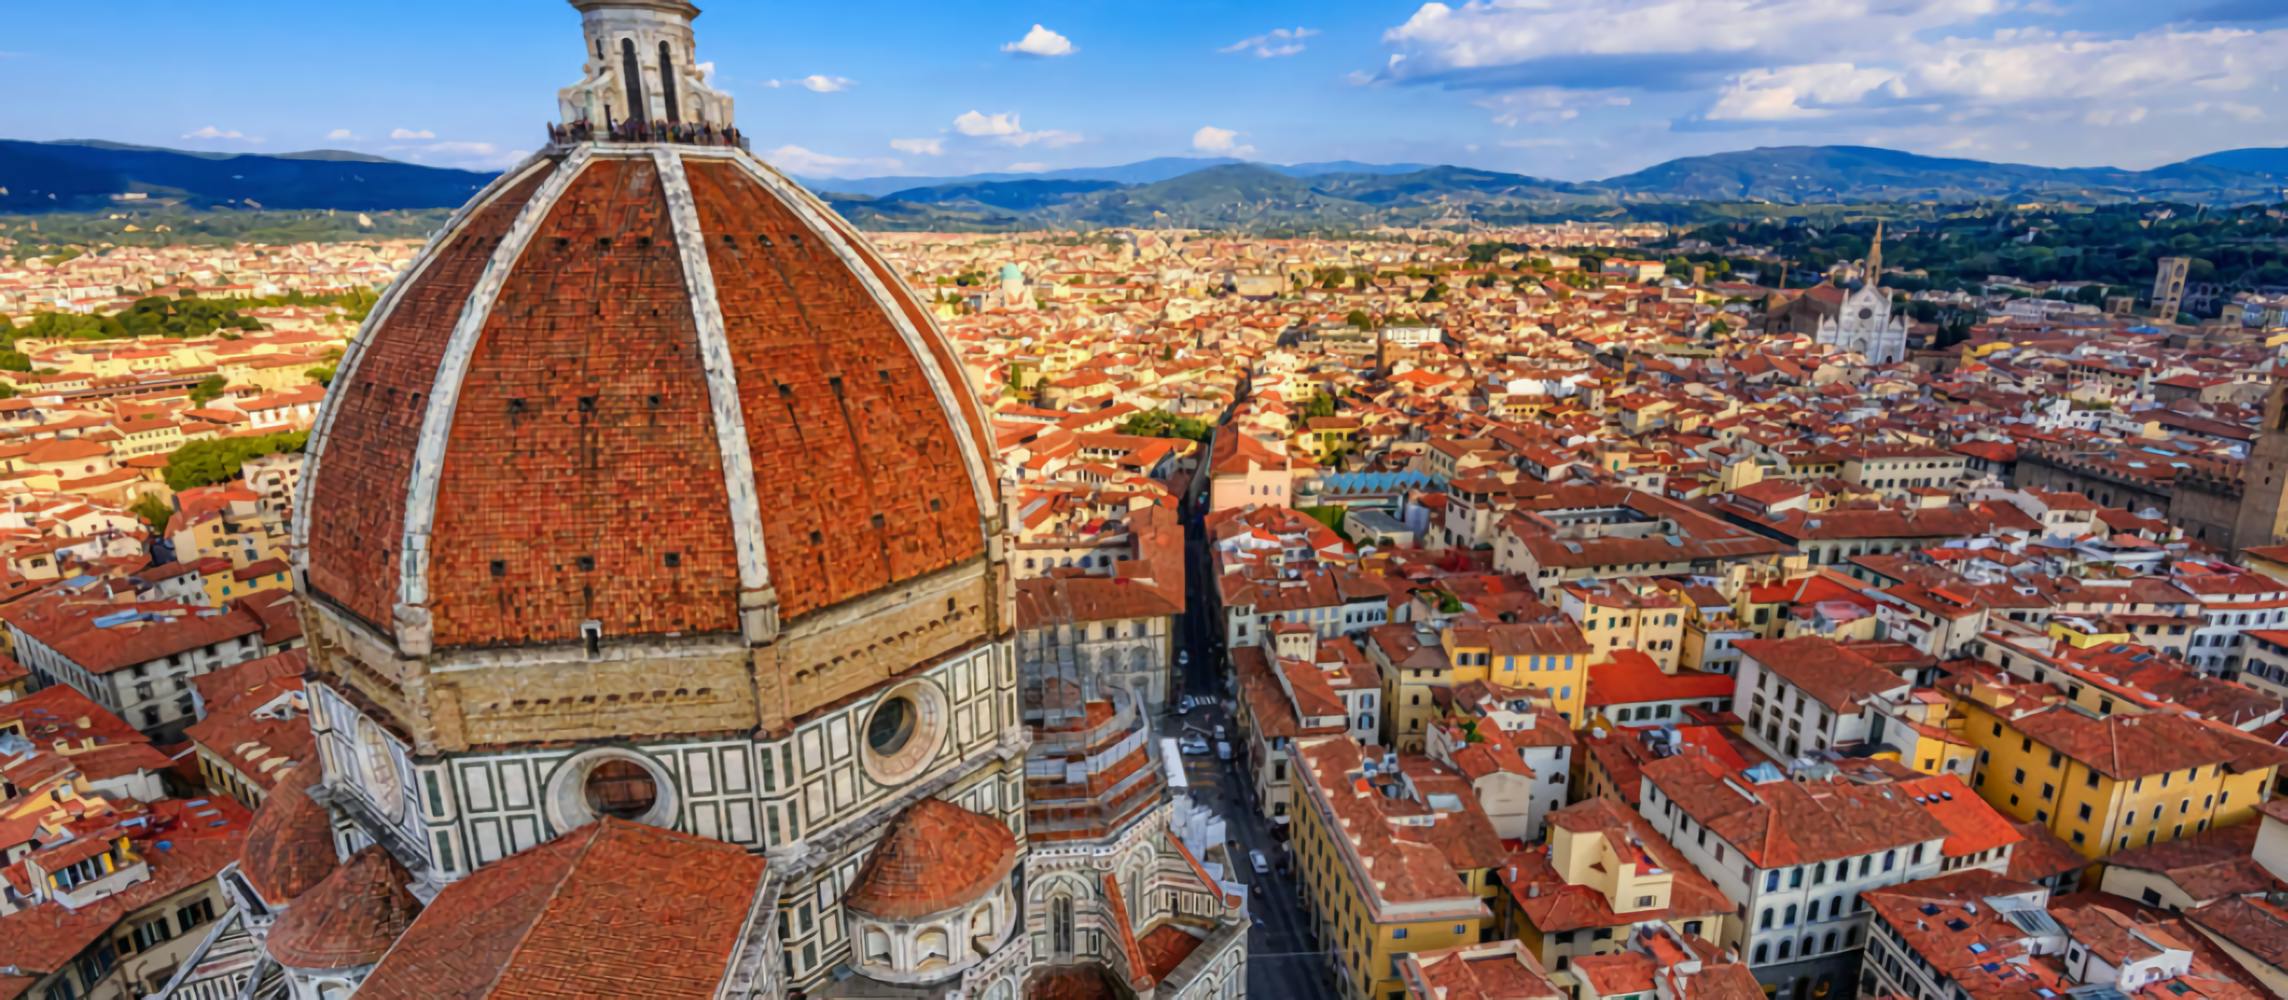 Tour per piccoli gruppi del Duomo di Firenze con biglietti salta fila